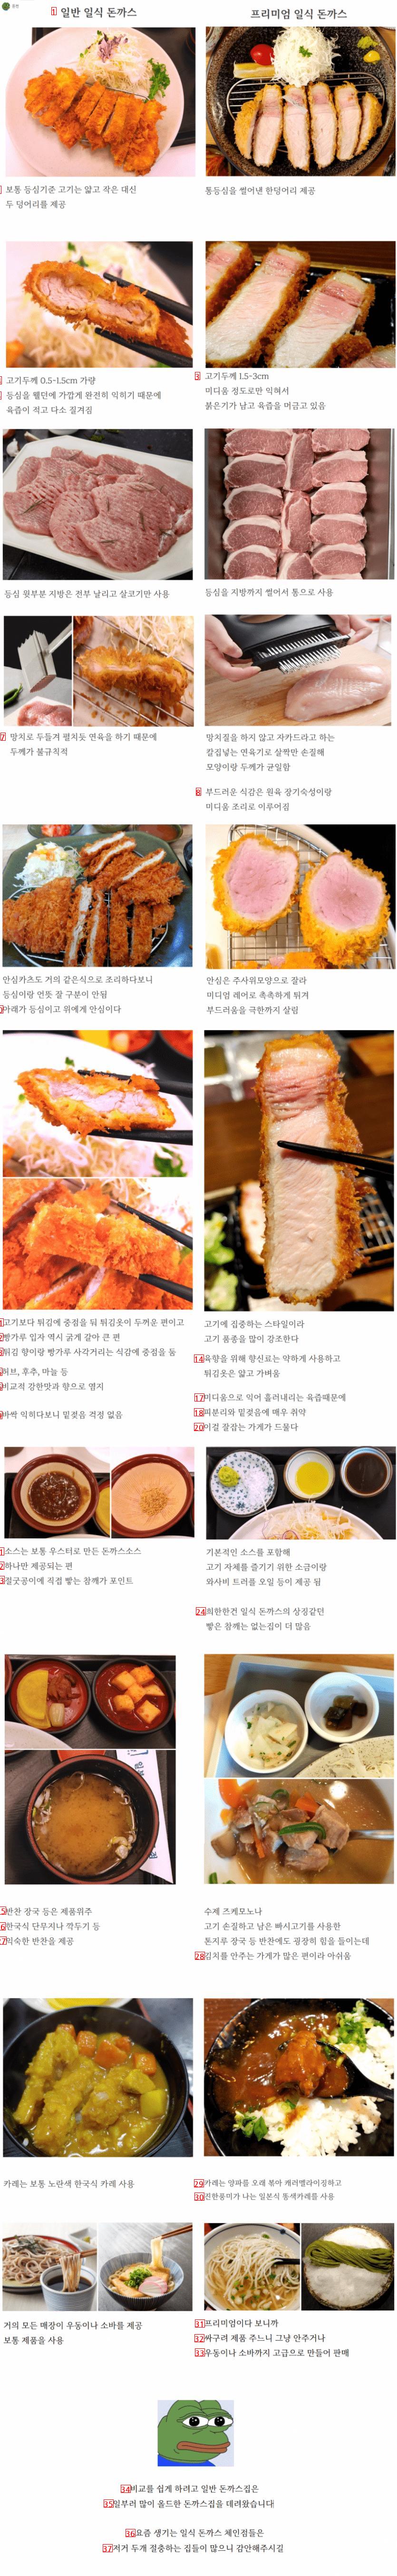 Old Japanese pork cutlet vs Premium Japanese pork cutlet